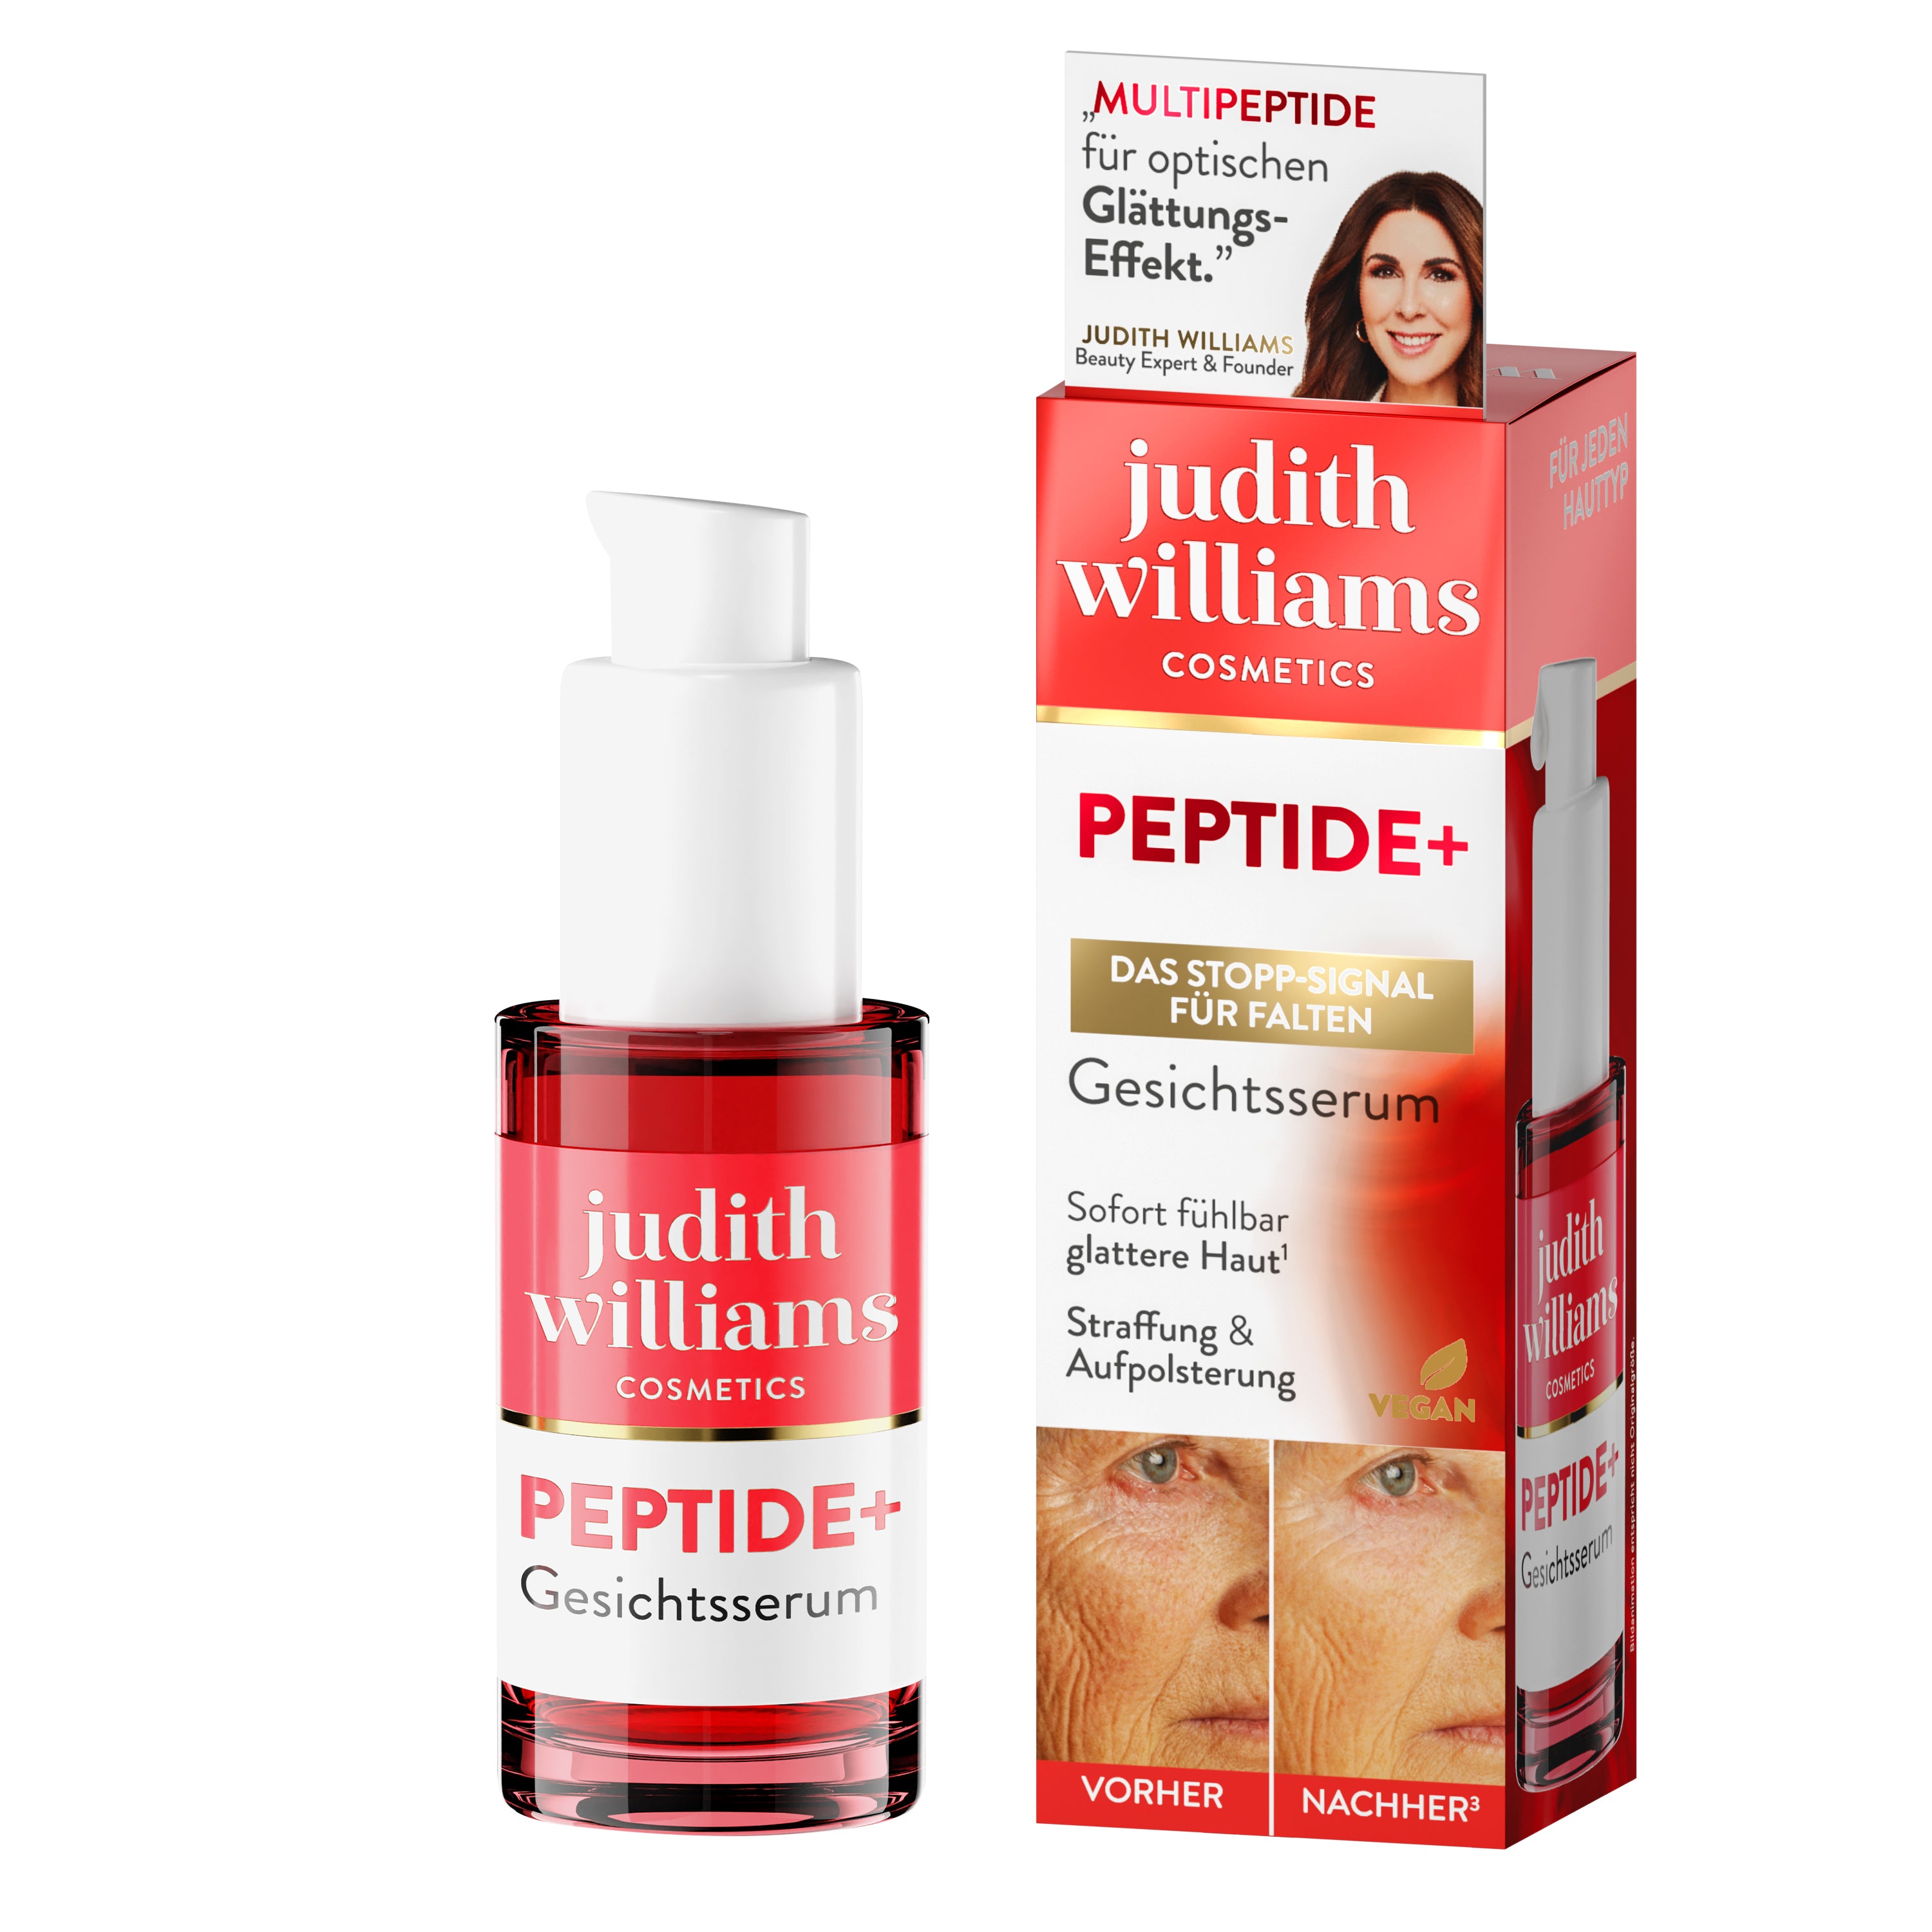 Gesichtsserum | Peptide+ | Gesichtsserum | Judith Williams